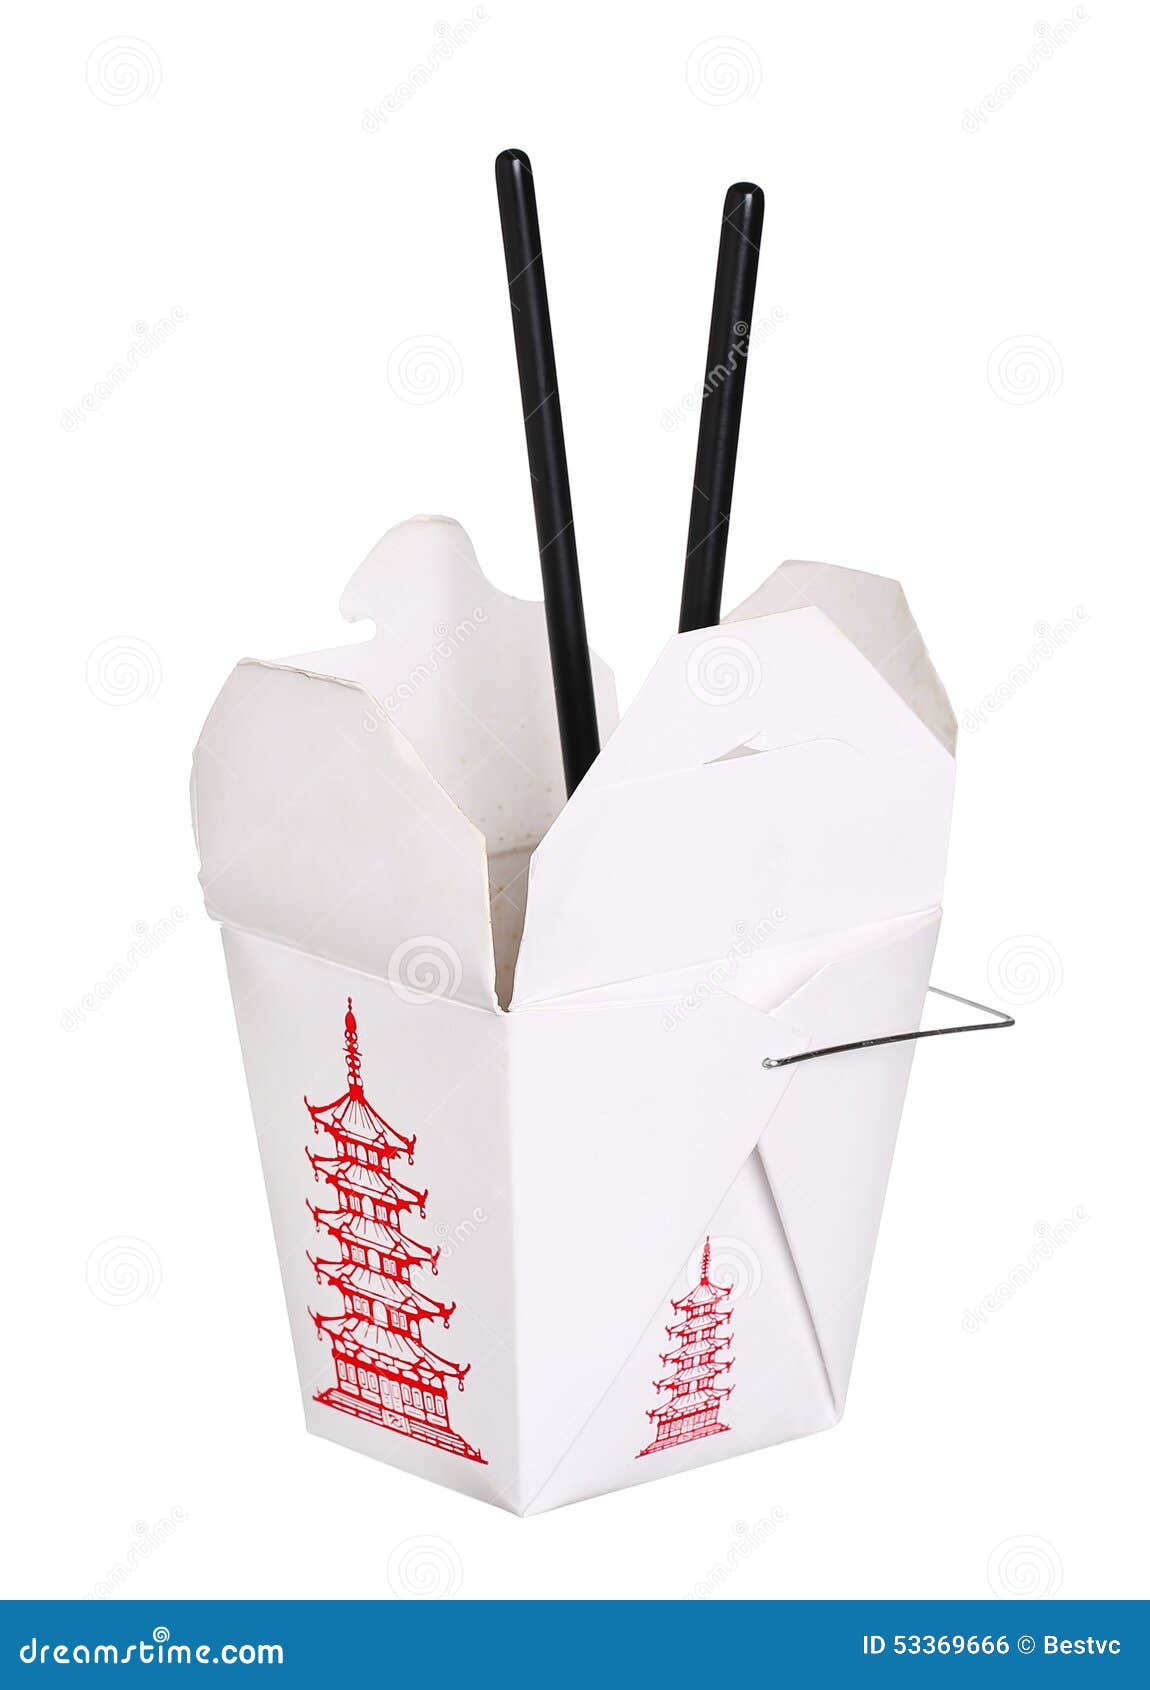 Палочки в брендированной упаковке с логотипом для суши оптом на УпаковкаТорг